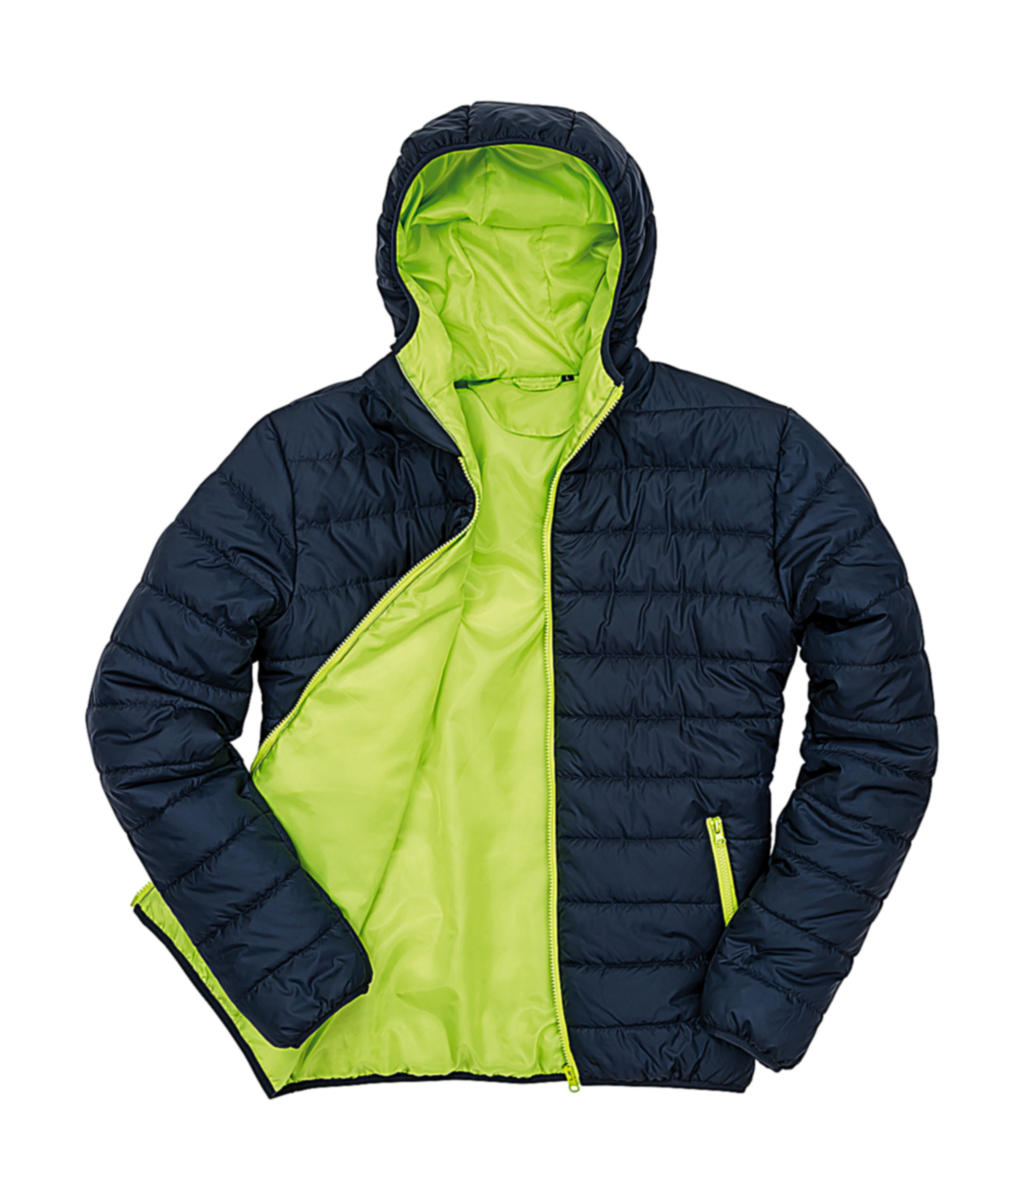 Pánská polstrovaná bunda Result s kapucí Velikost: 2XL, Barva: Navy/Lime